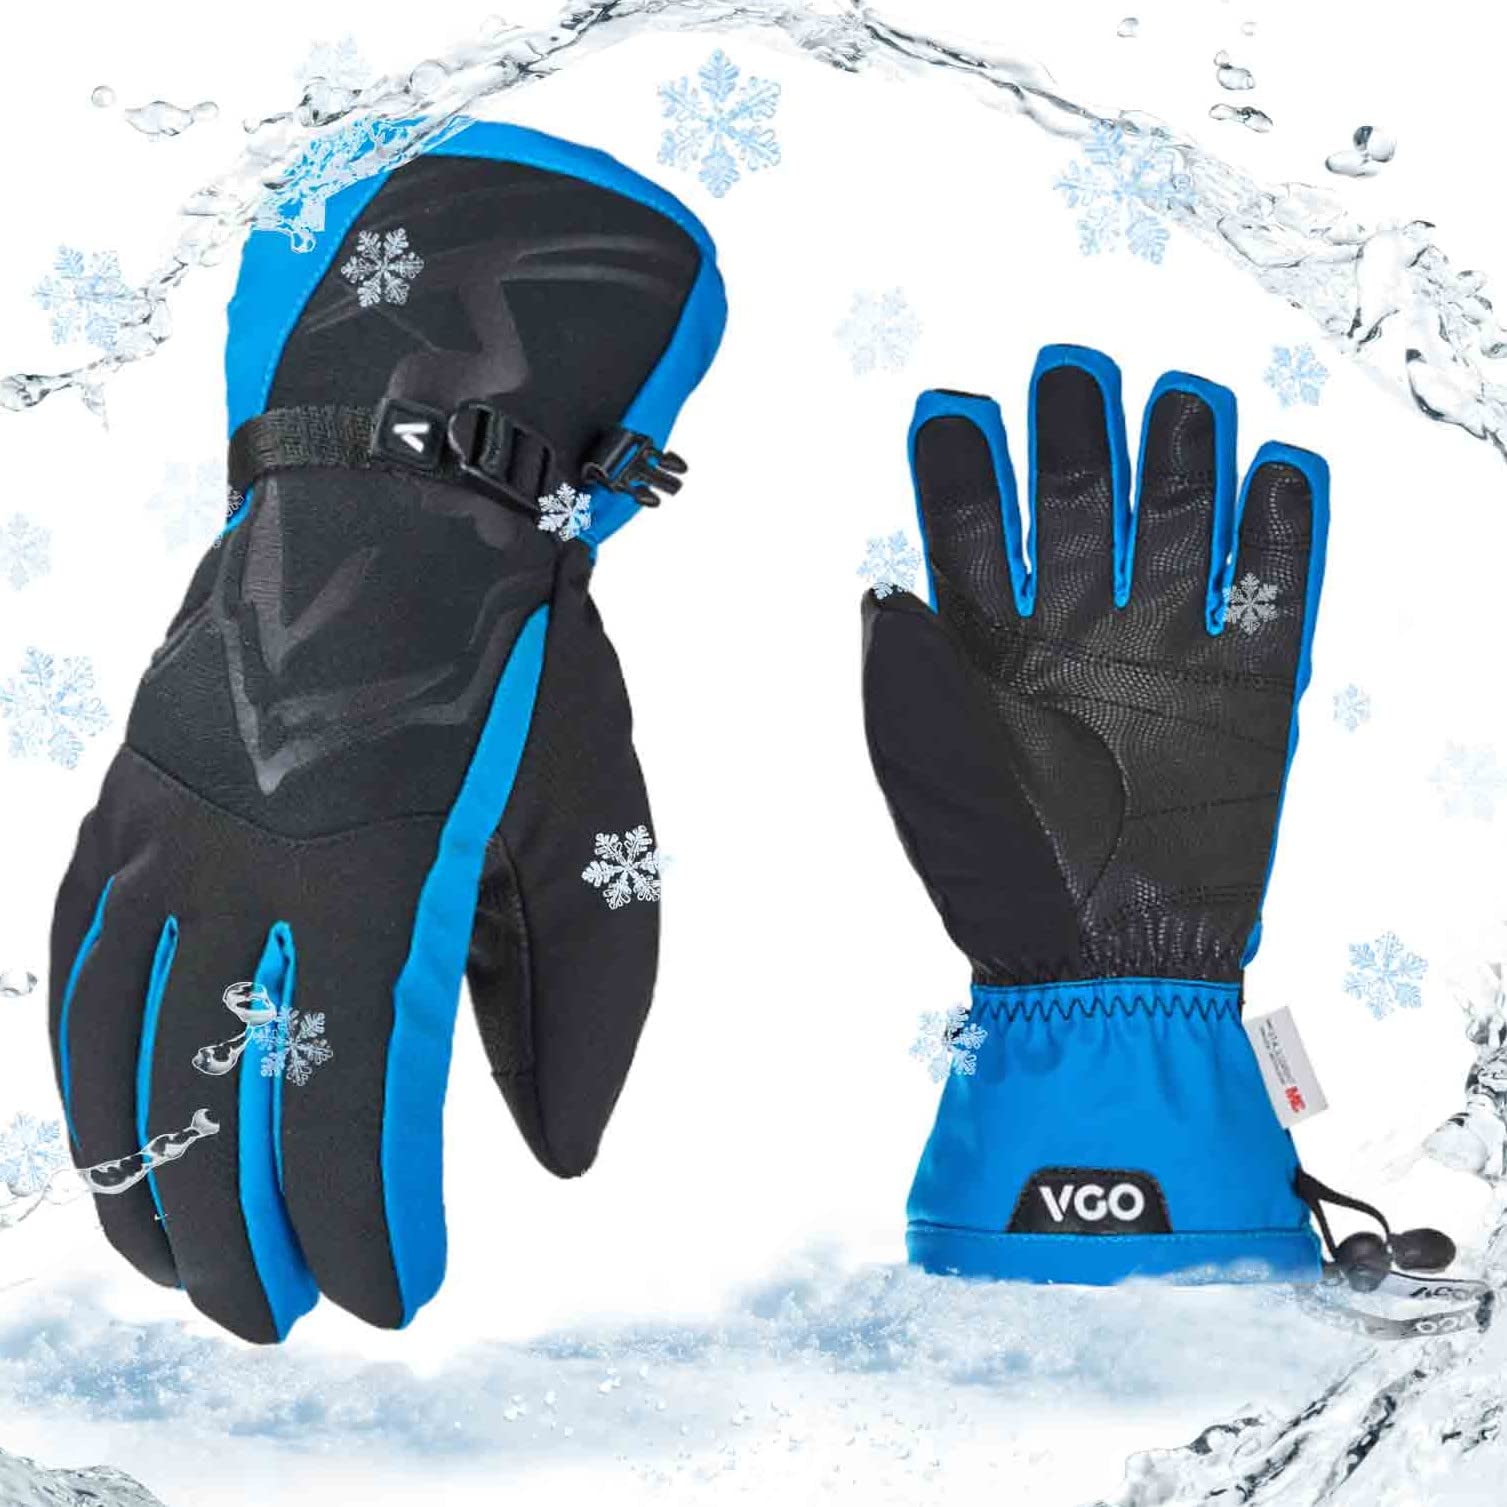 Vgo SL2466FW, warme Ski-Handschuhe für Herren, Winter-Schneehandschuhe, Outdoor-Handschuhe, 3M Thinsulate, wasserdicht, 1 Paar